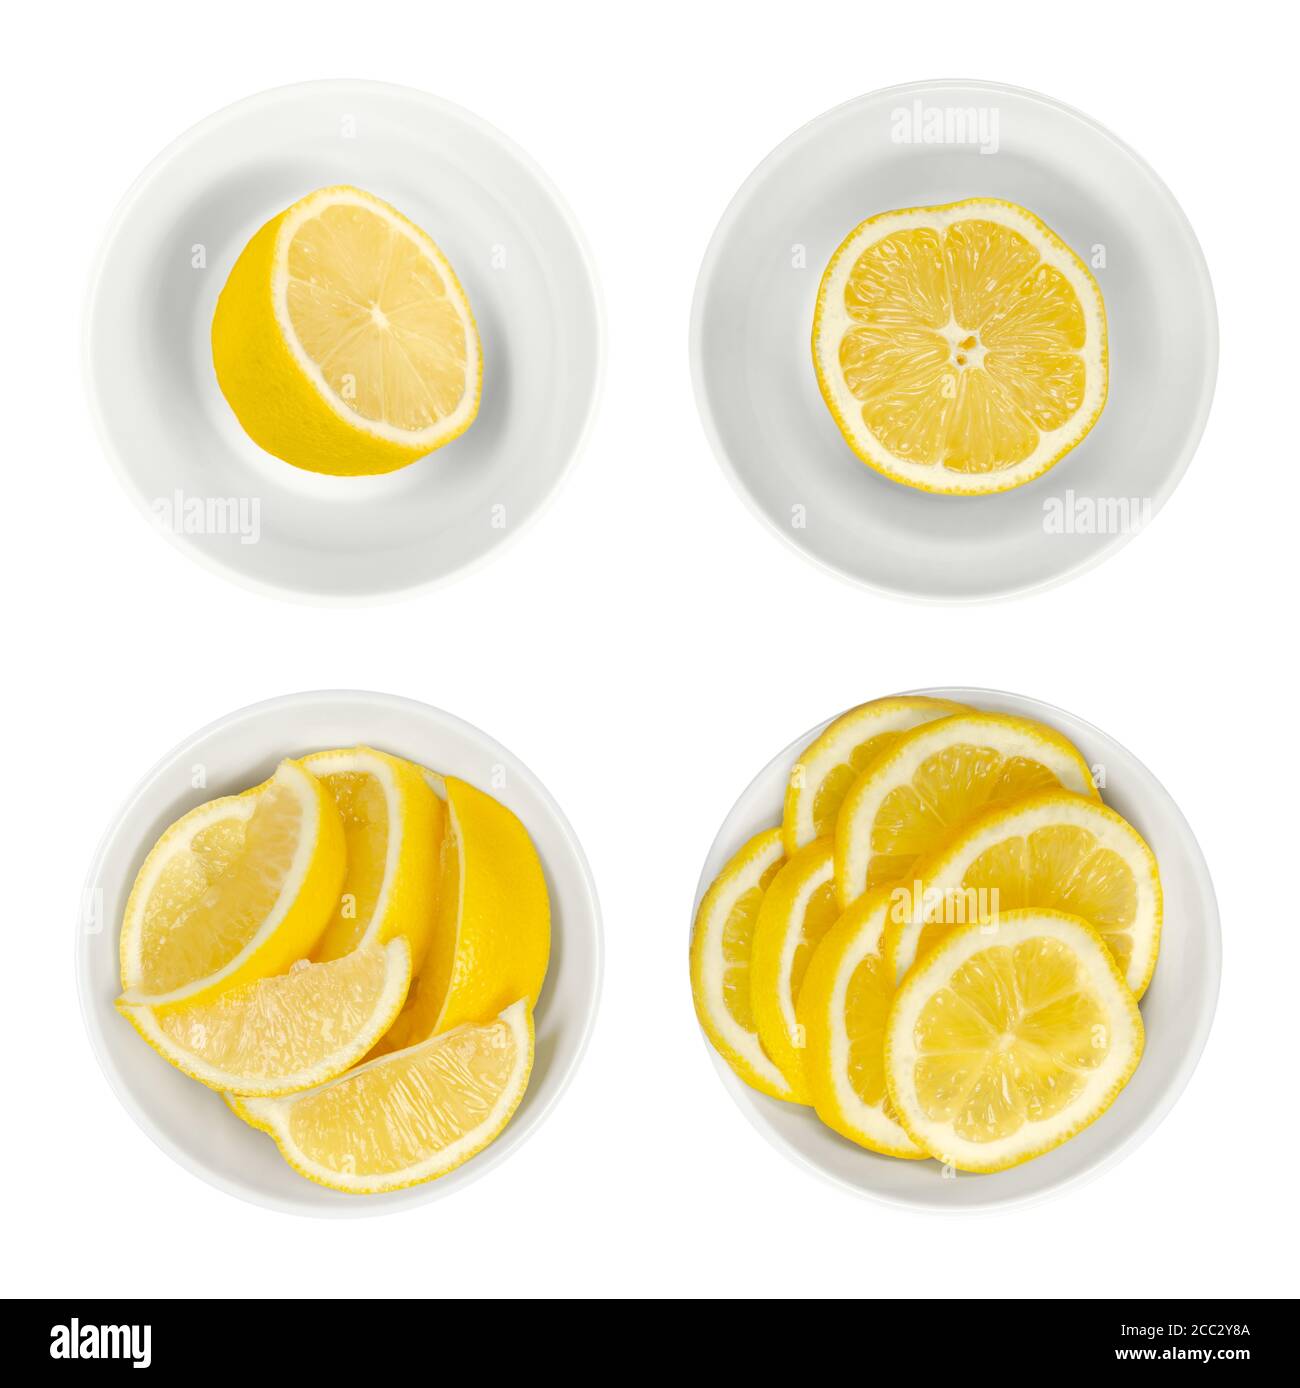 Limoni in ciotole di vetro bianco. Metà di limone appena tagliate, spicchi e fette. Agrumi maturi e gialli, utilizzati per scopi culinari. Limone di agrumi. Foto Stock